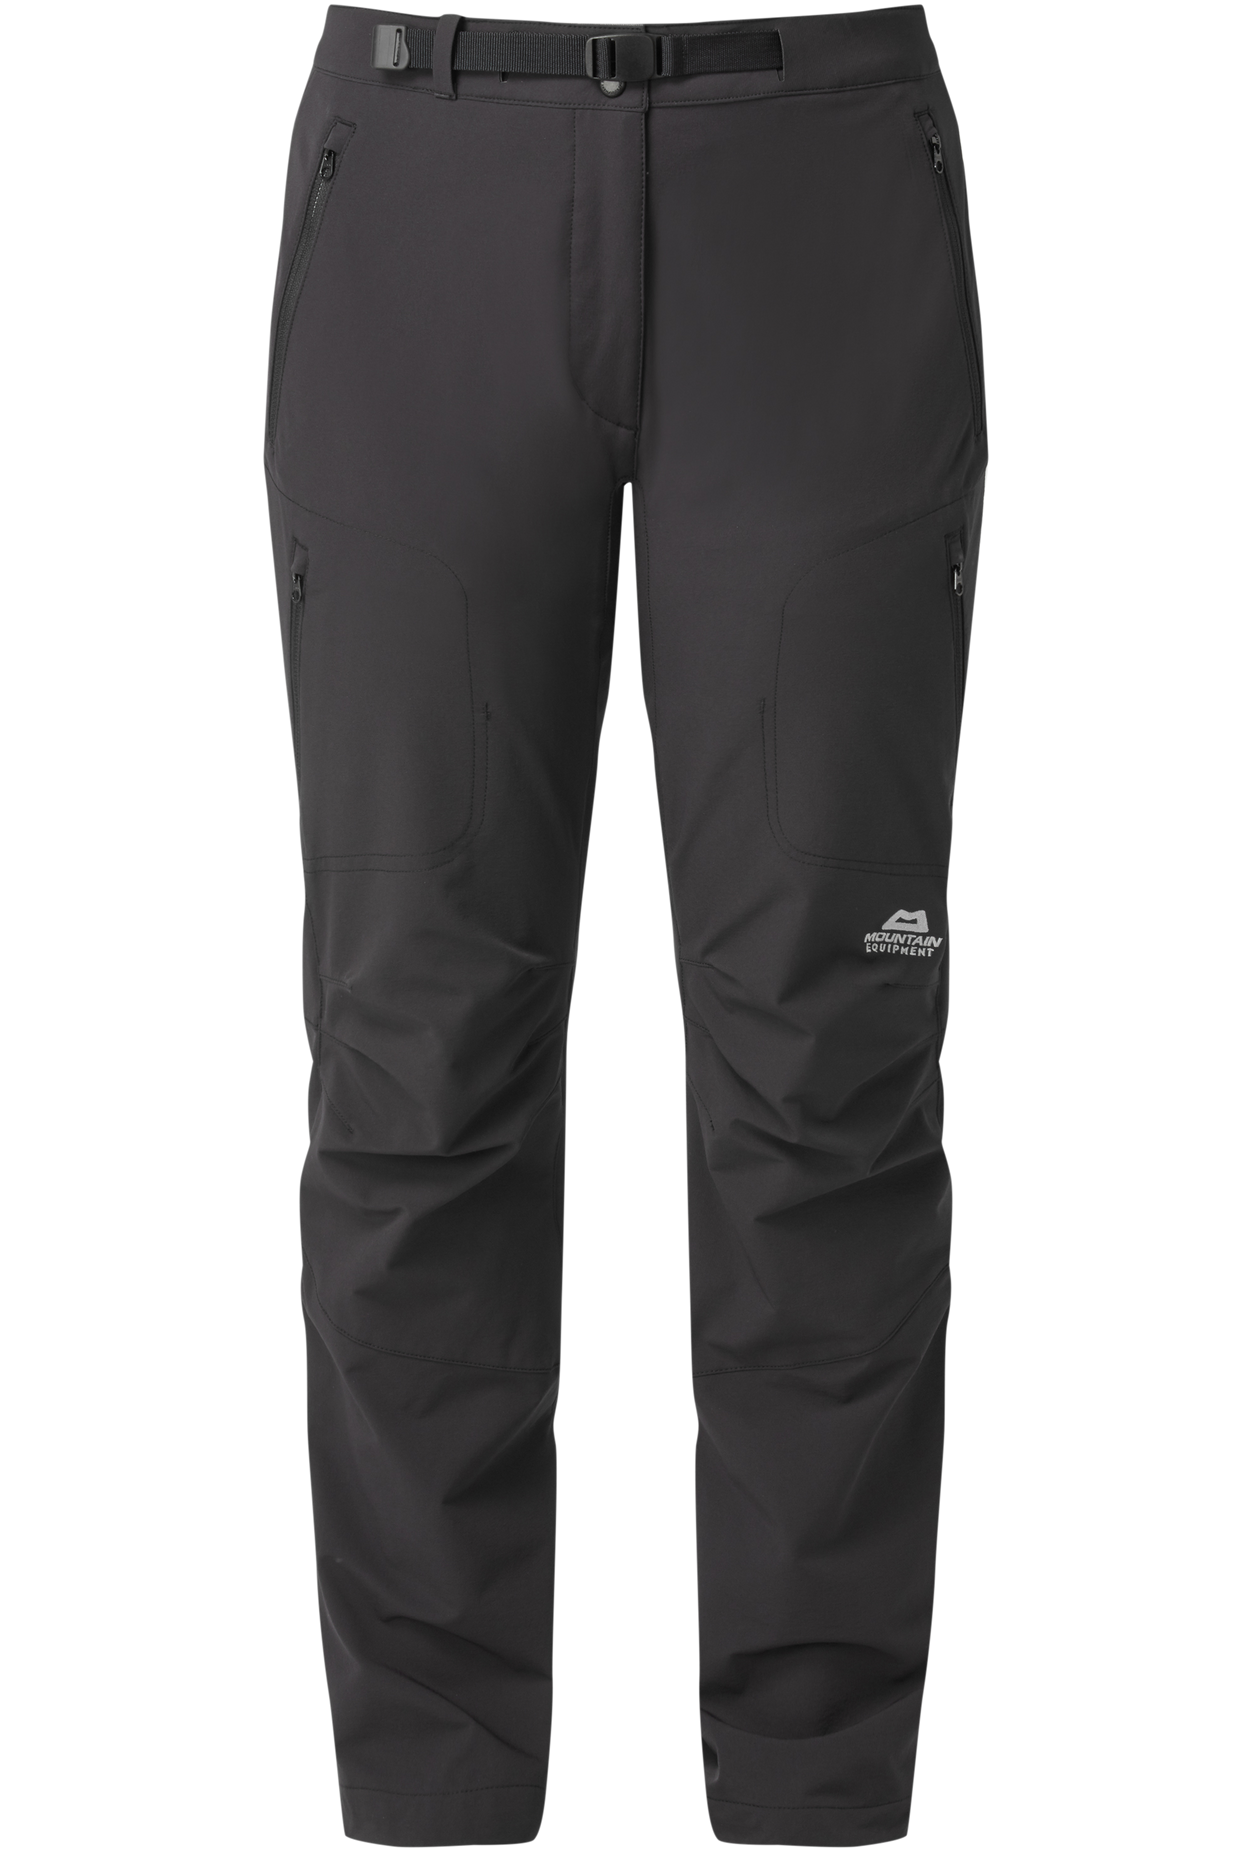 Mountain Equipment dámské softshellové kalhoty Chamois Wmns Pant Barva: black, Velikost: 18/XXL